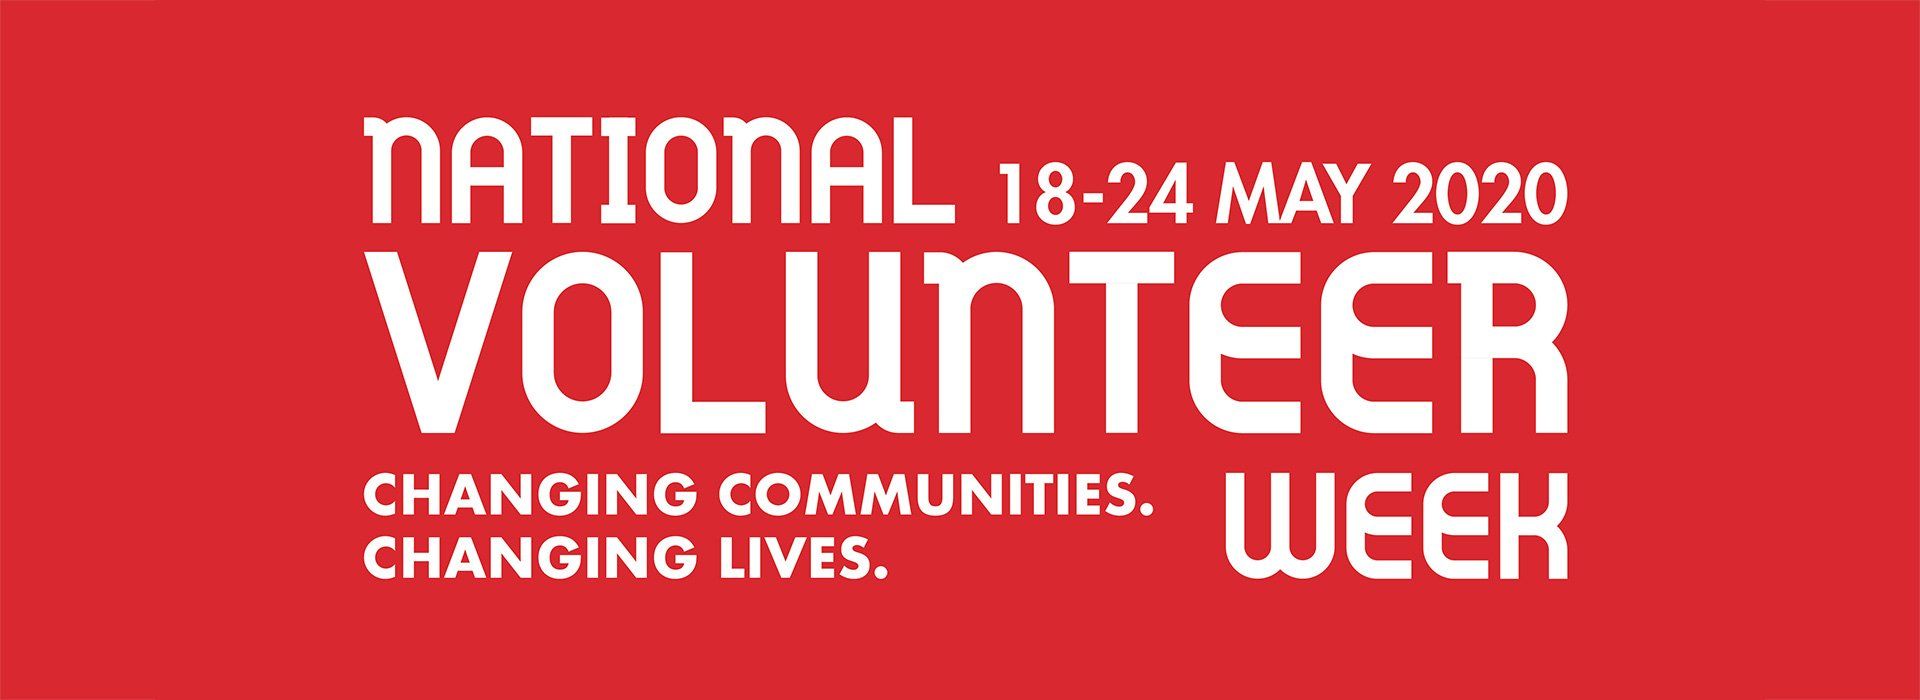 national volunteering week